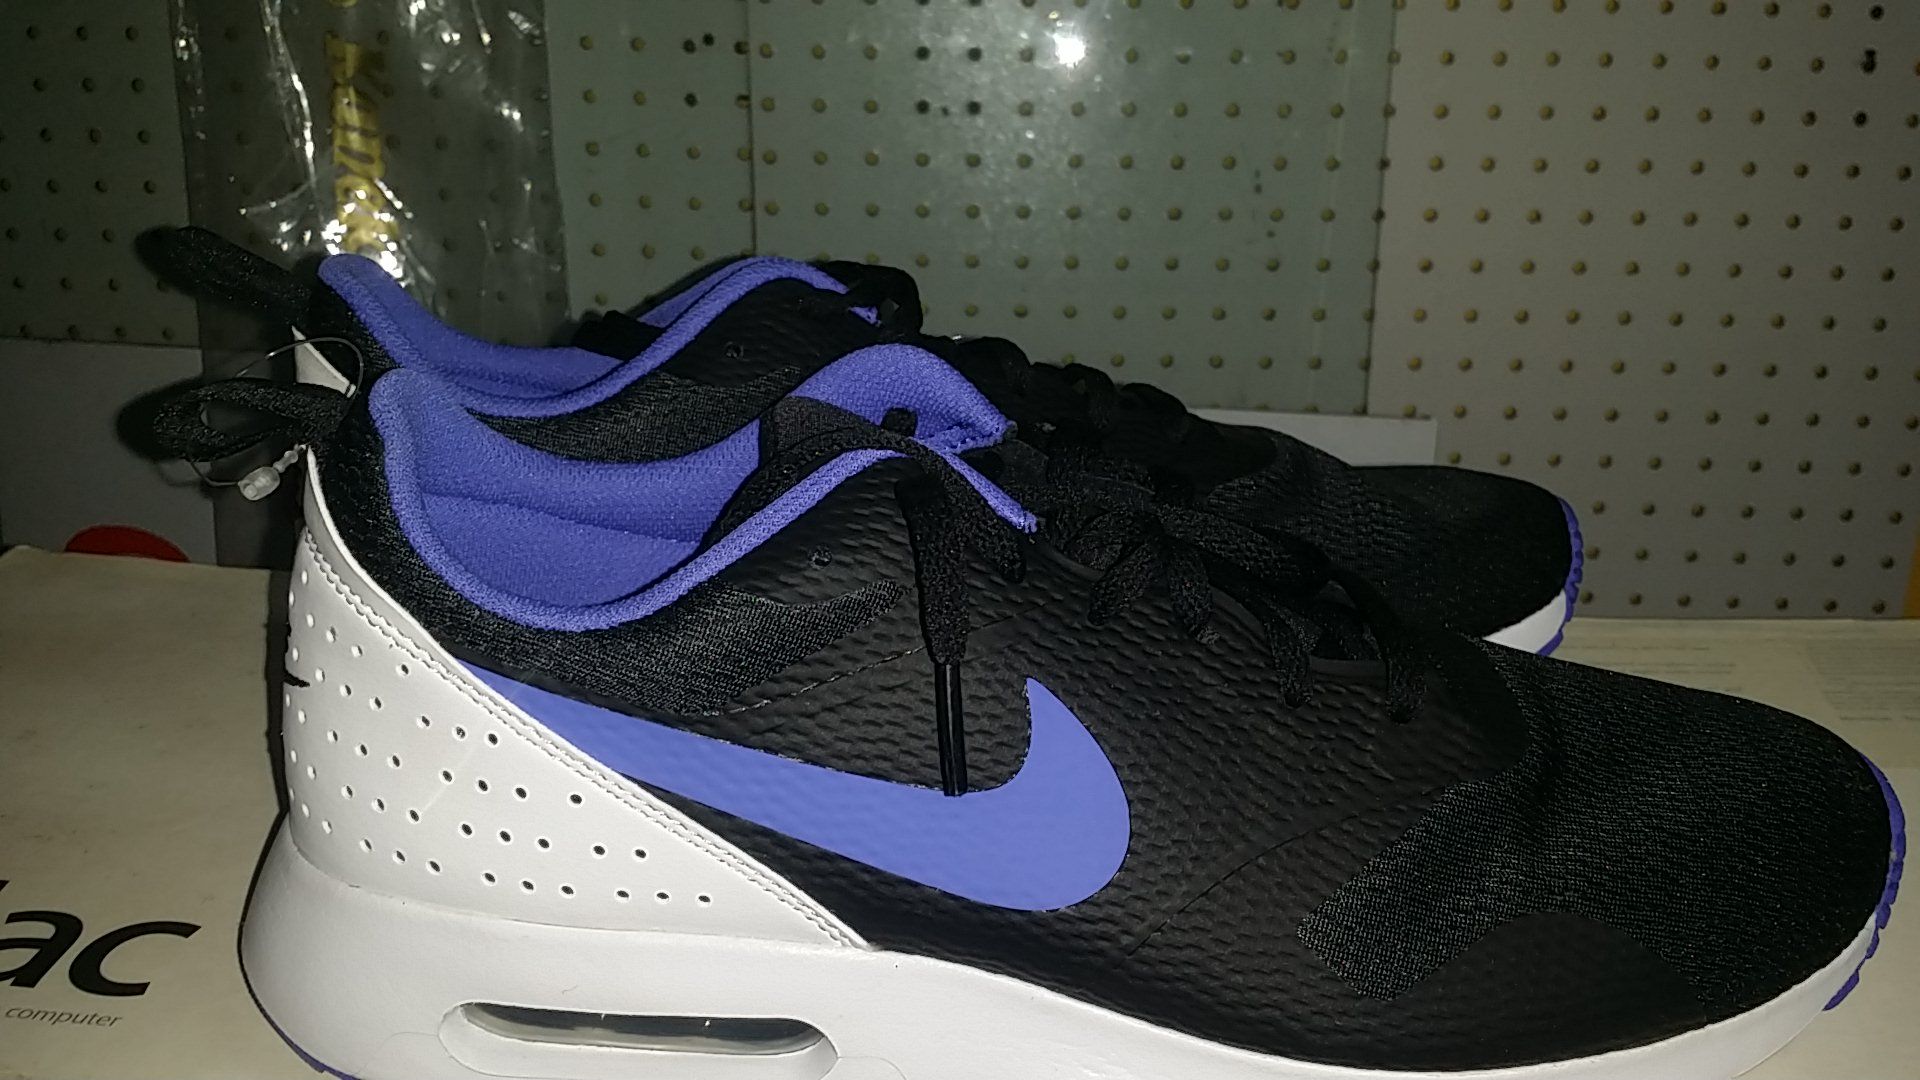 Nike Air tennis shoes